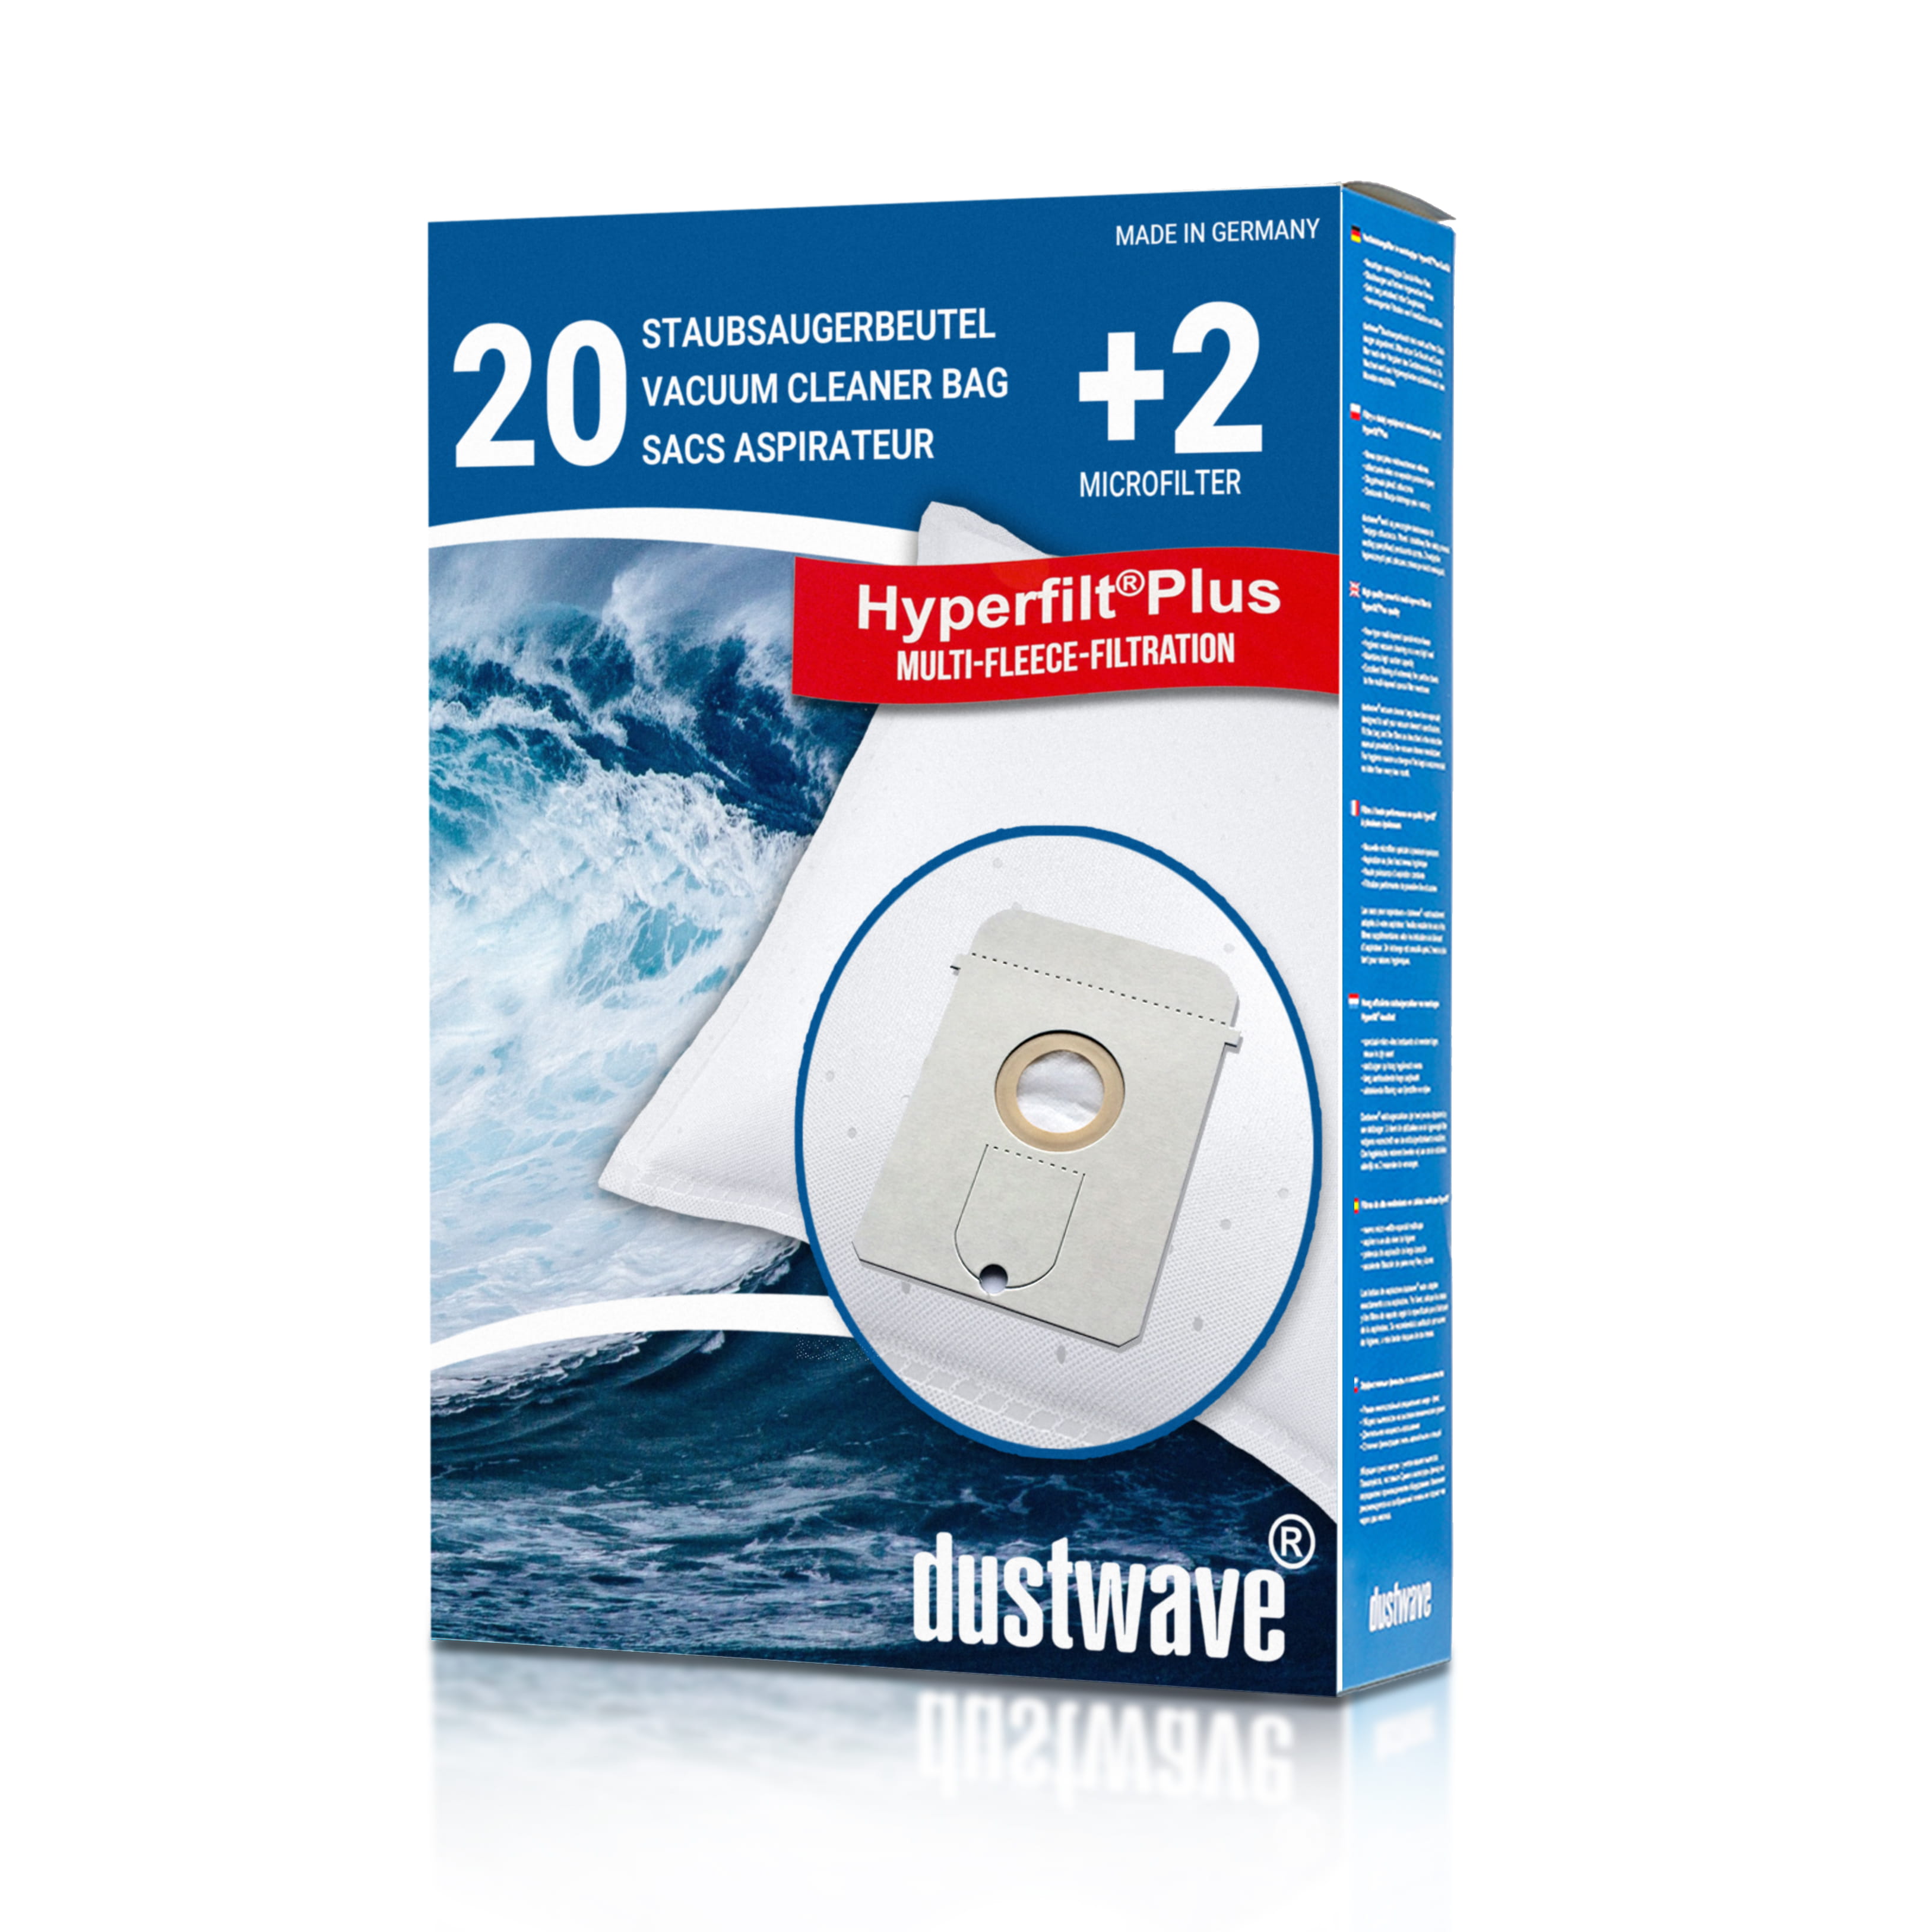 Dustwave® 20 Staubsaugerbeutel für AEG Vampyr 6200 Electronic - hocheffizient, mehrlagiges Mikrovlies mit Hygieneverschluss - Made in Germany